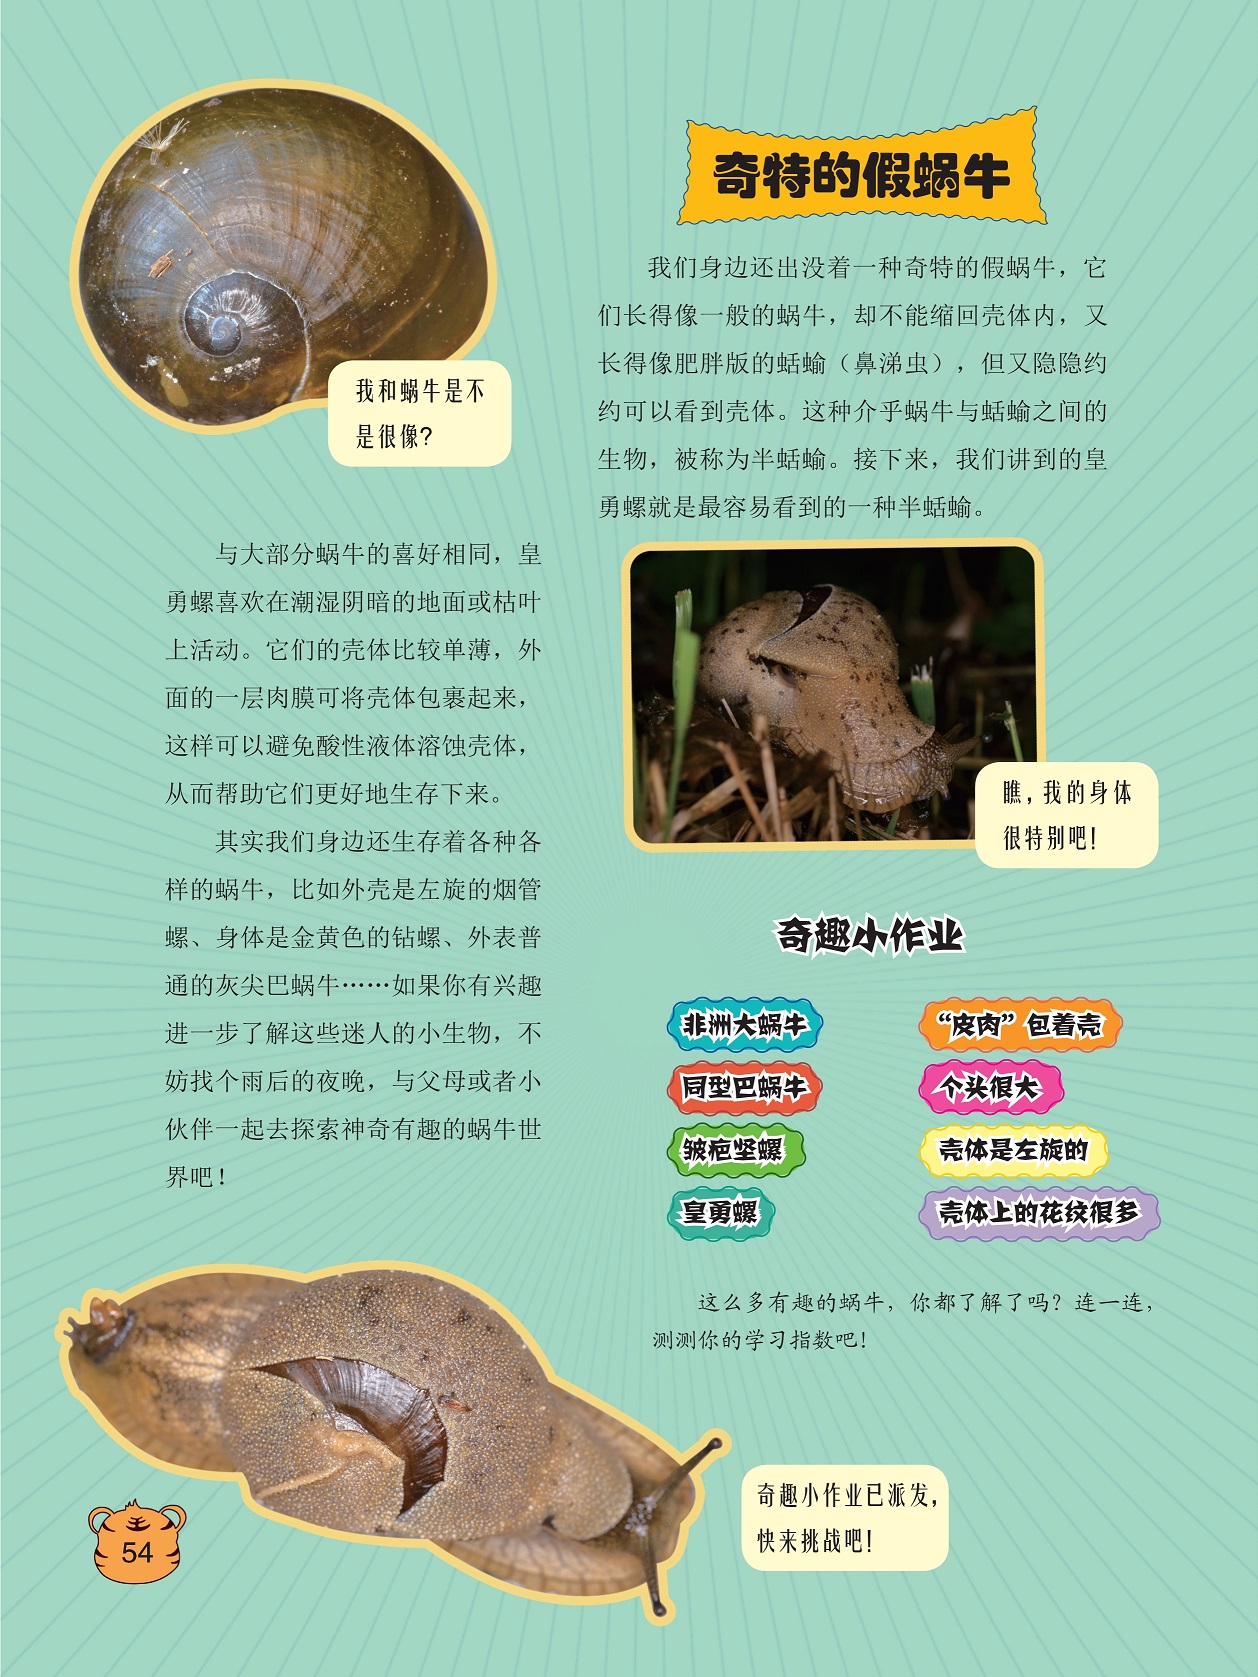 奇特的假蜗牛,皇勇螺喜欢在潮湿阴暗的地面或枯叶上活动